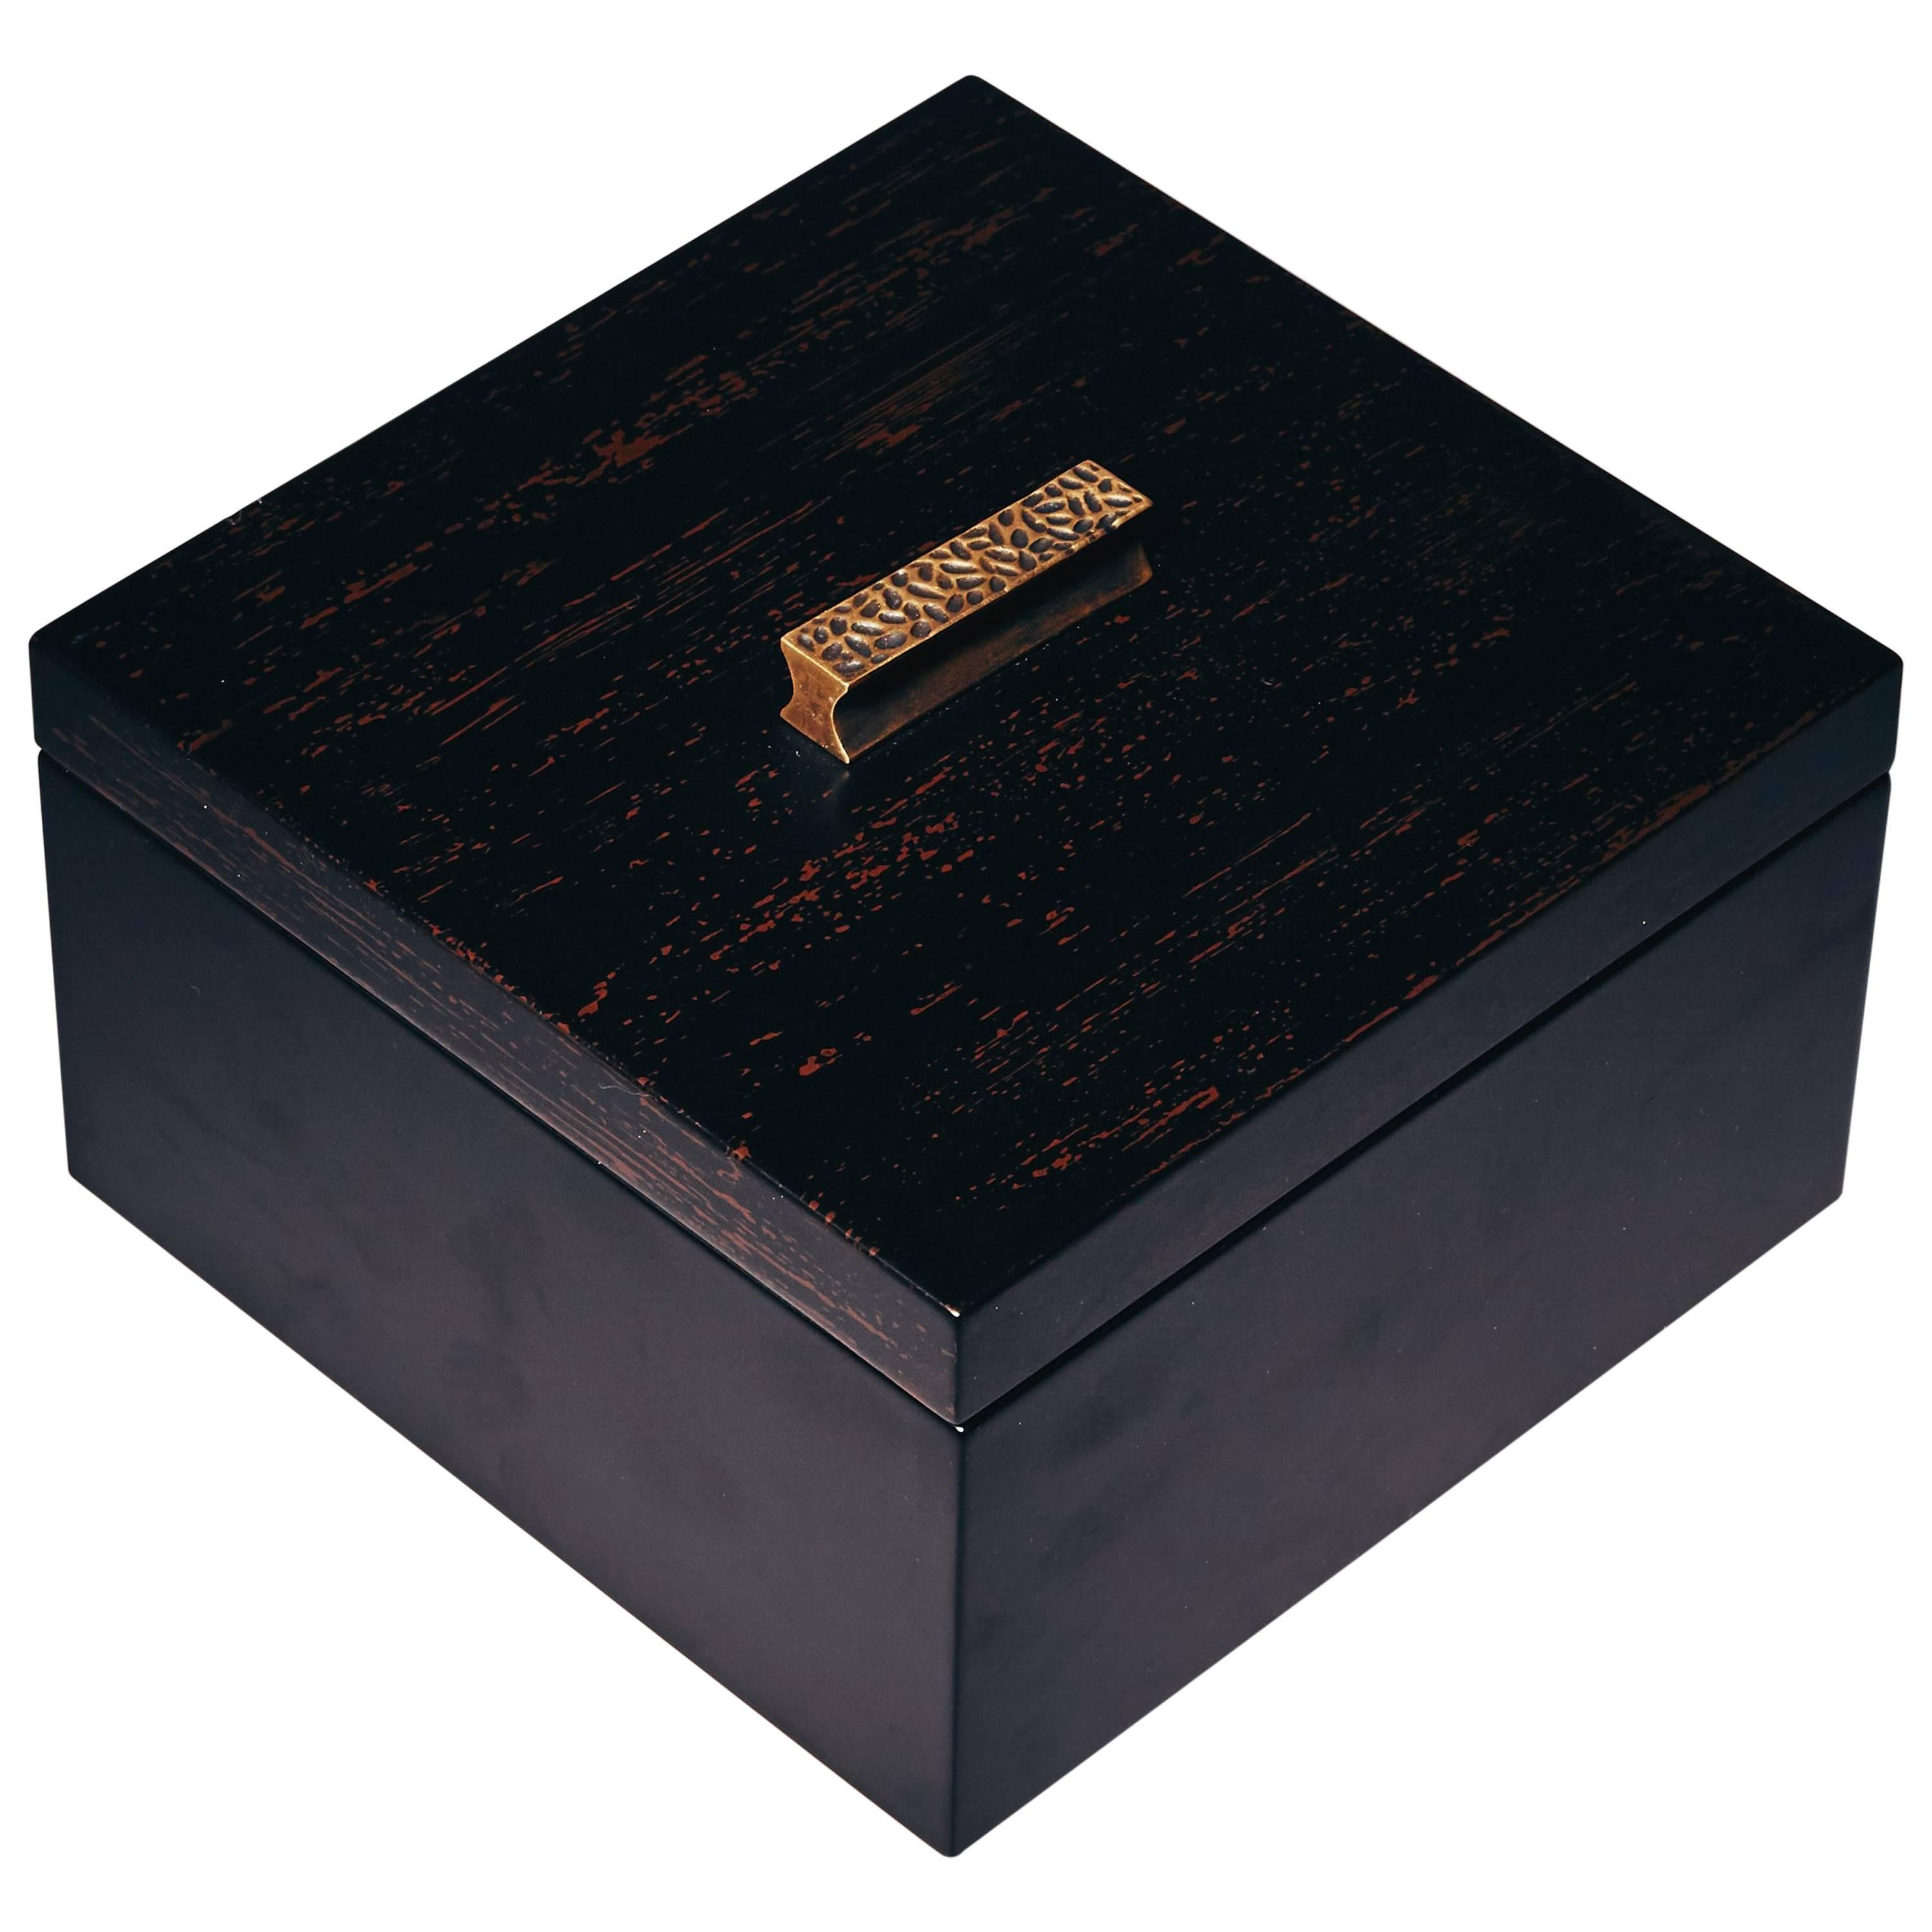 Decorative Boxes, ELLA by Reda Amalou Design, 2016 - Black & Brown Lacquer